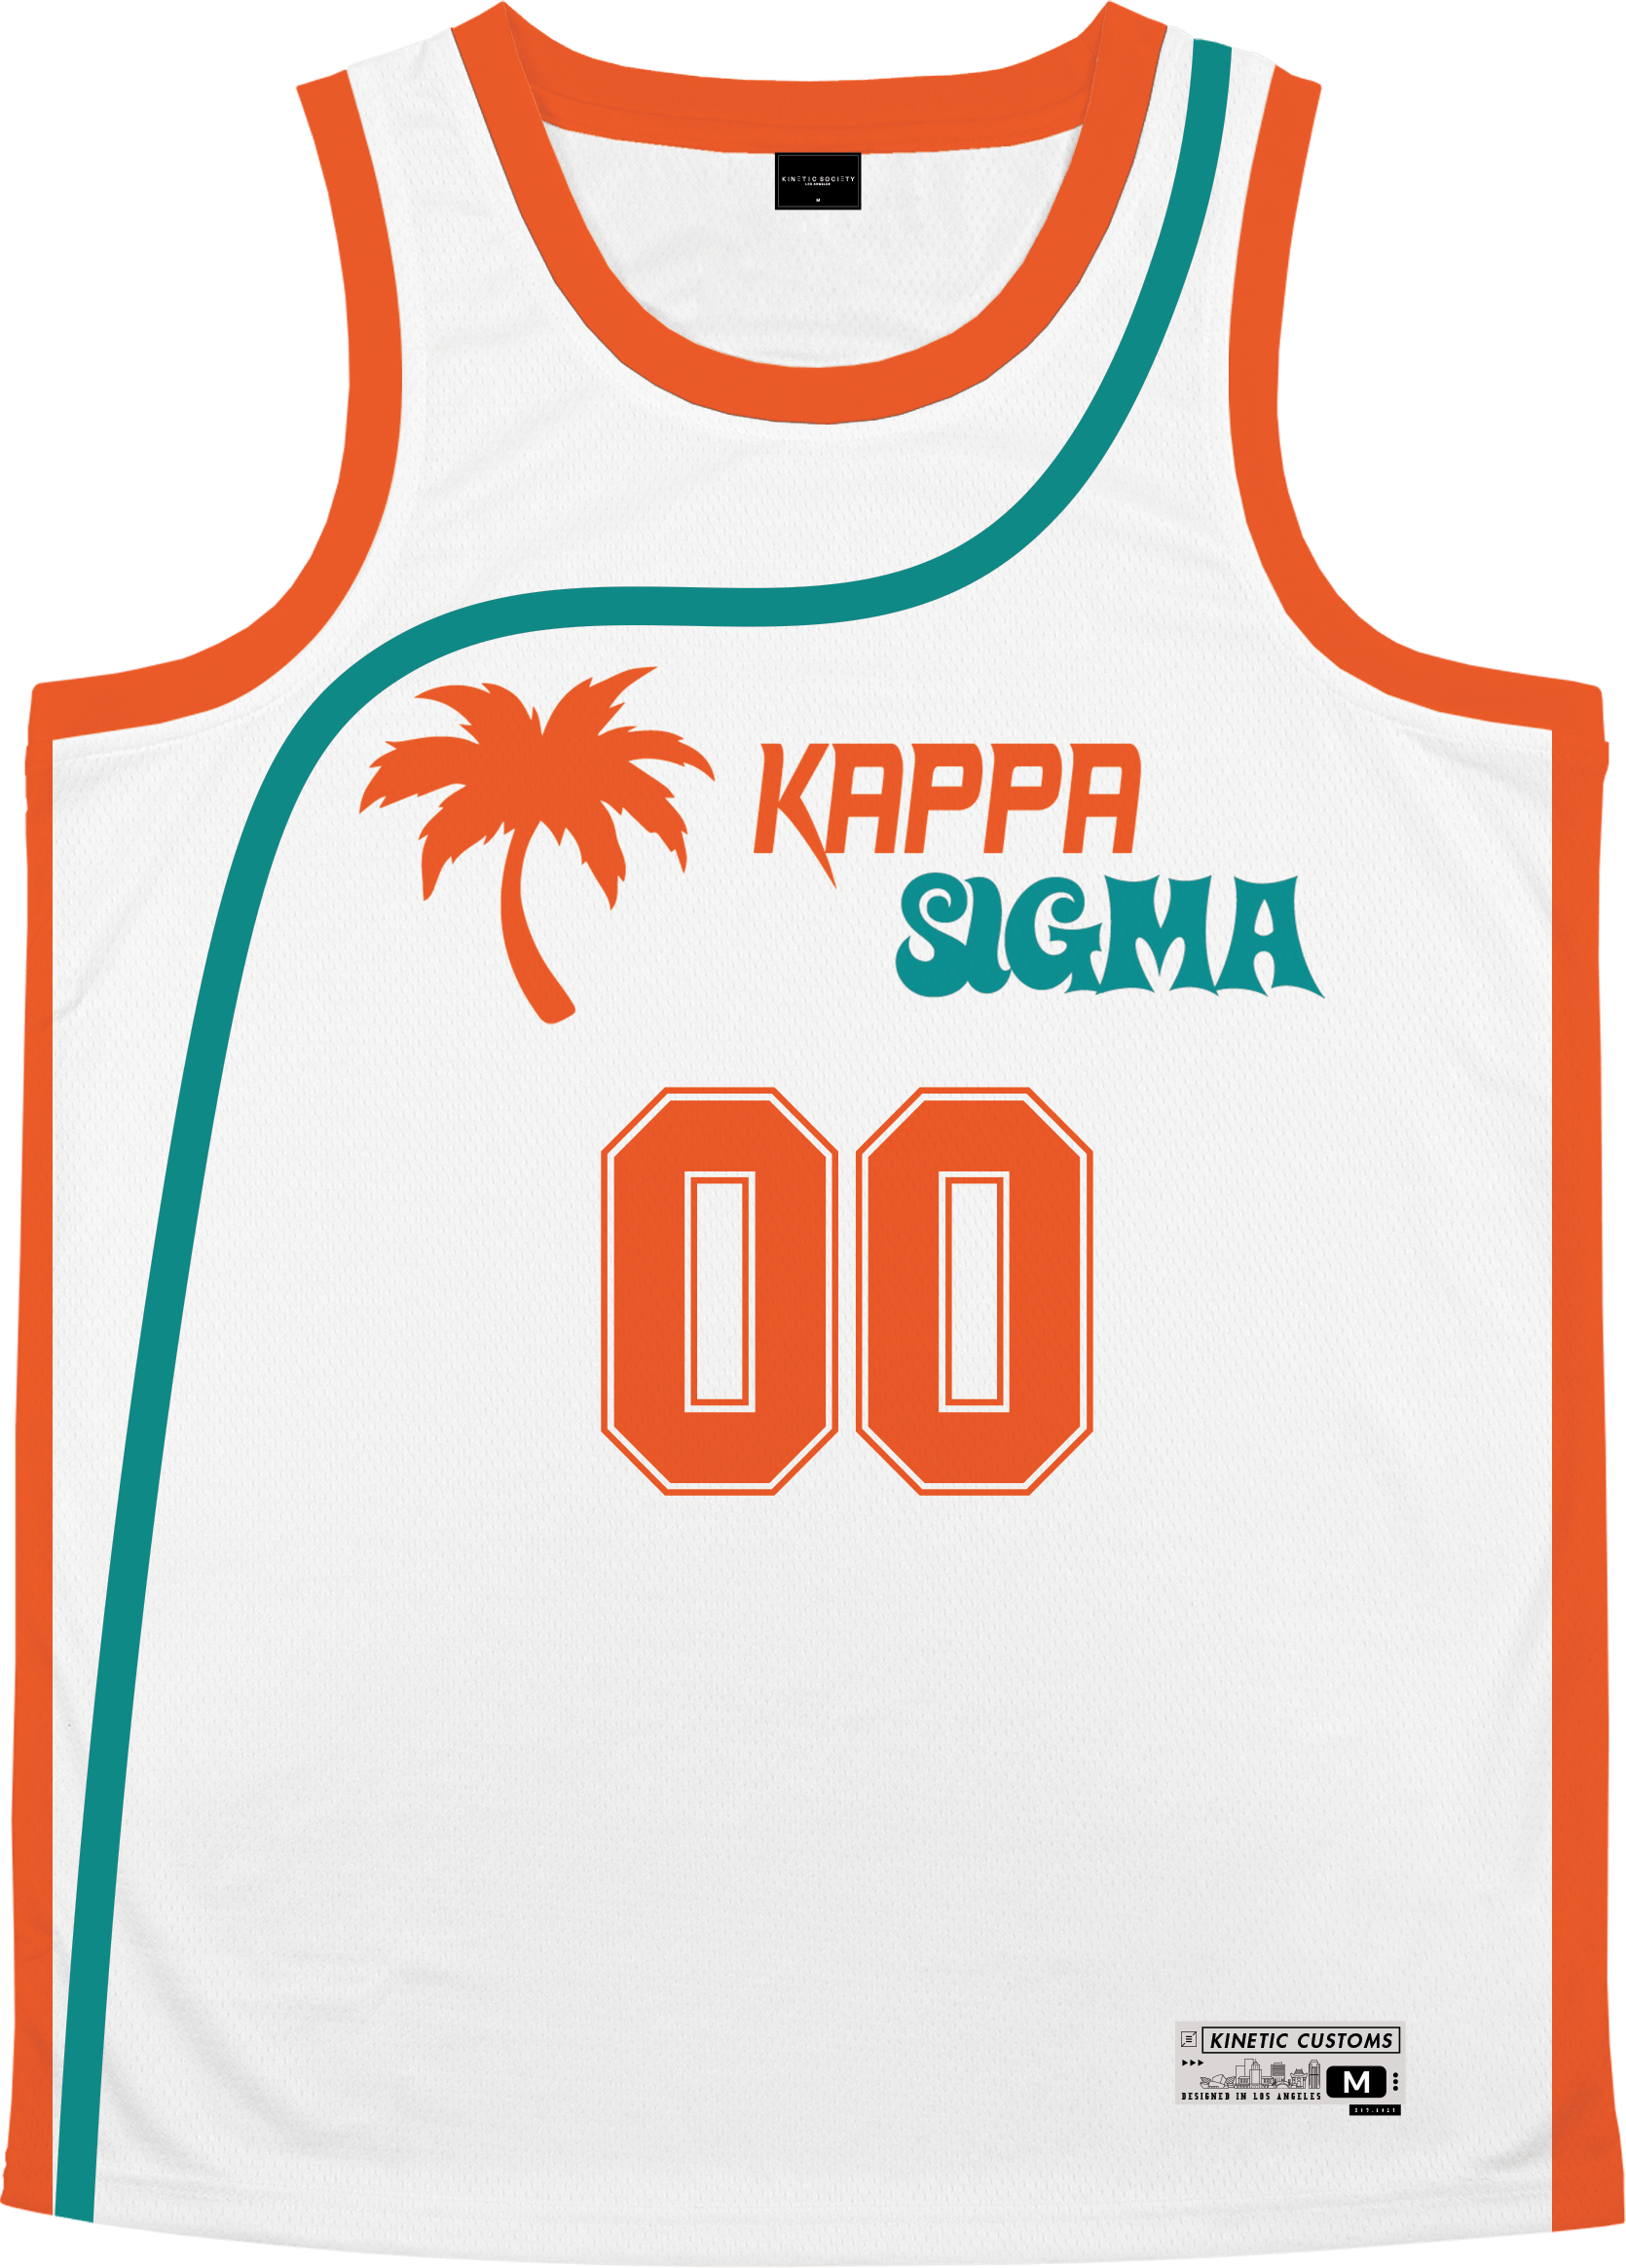 Kappa Sigma - Tropical Basketball Jersey Premium Basketball Kinetic Society LLC 